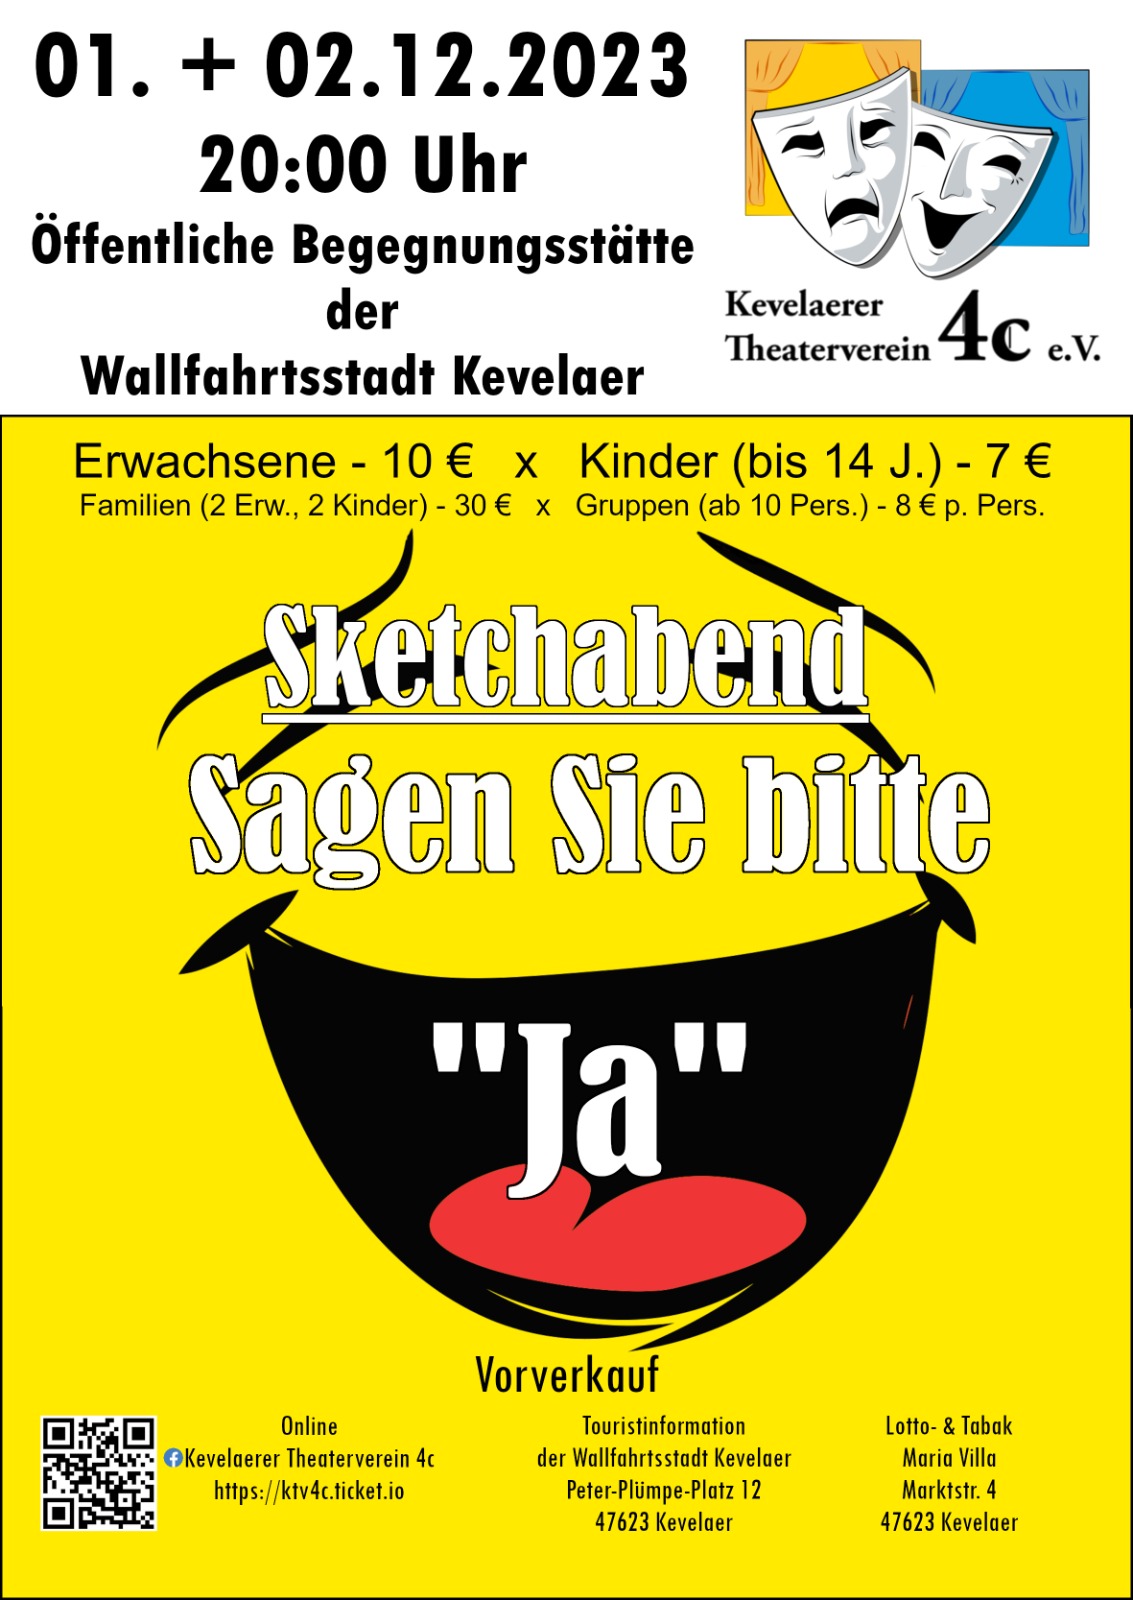 SKetchabend "Sagen Sie bitte Ja" - Theaterverein 4c